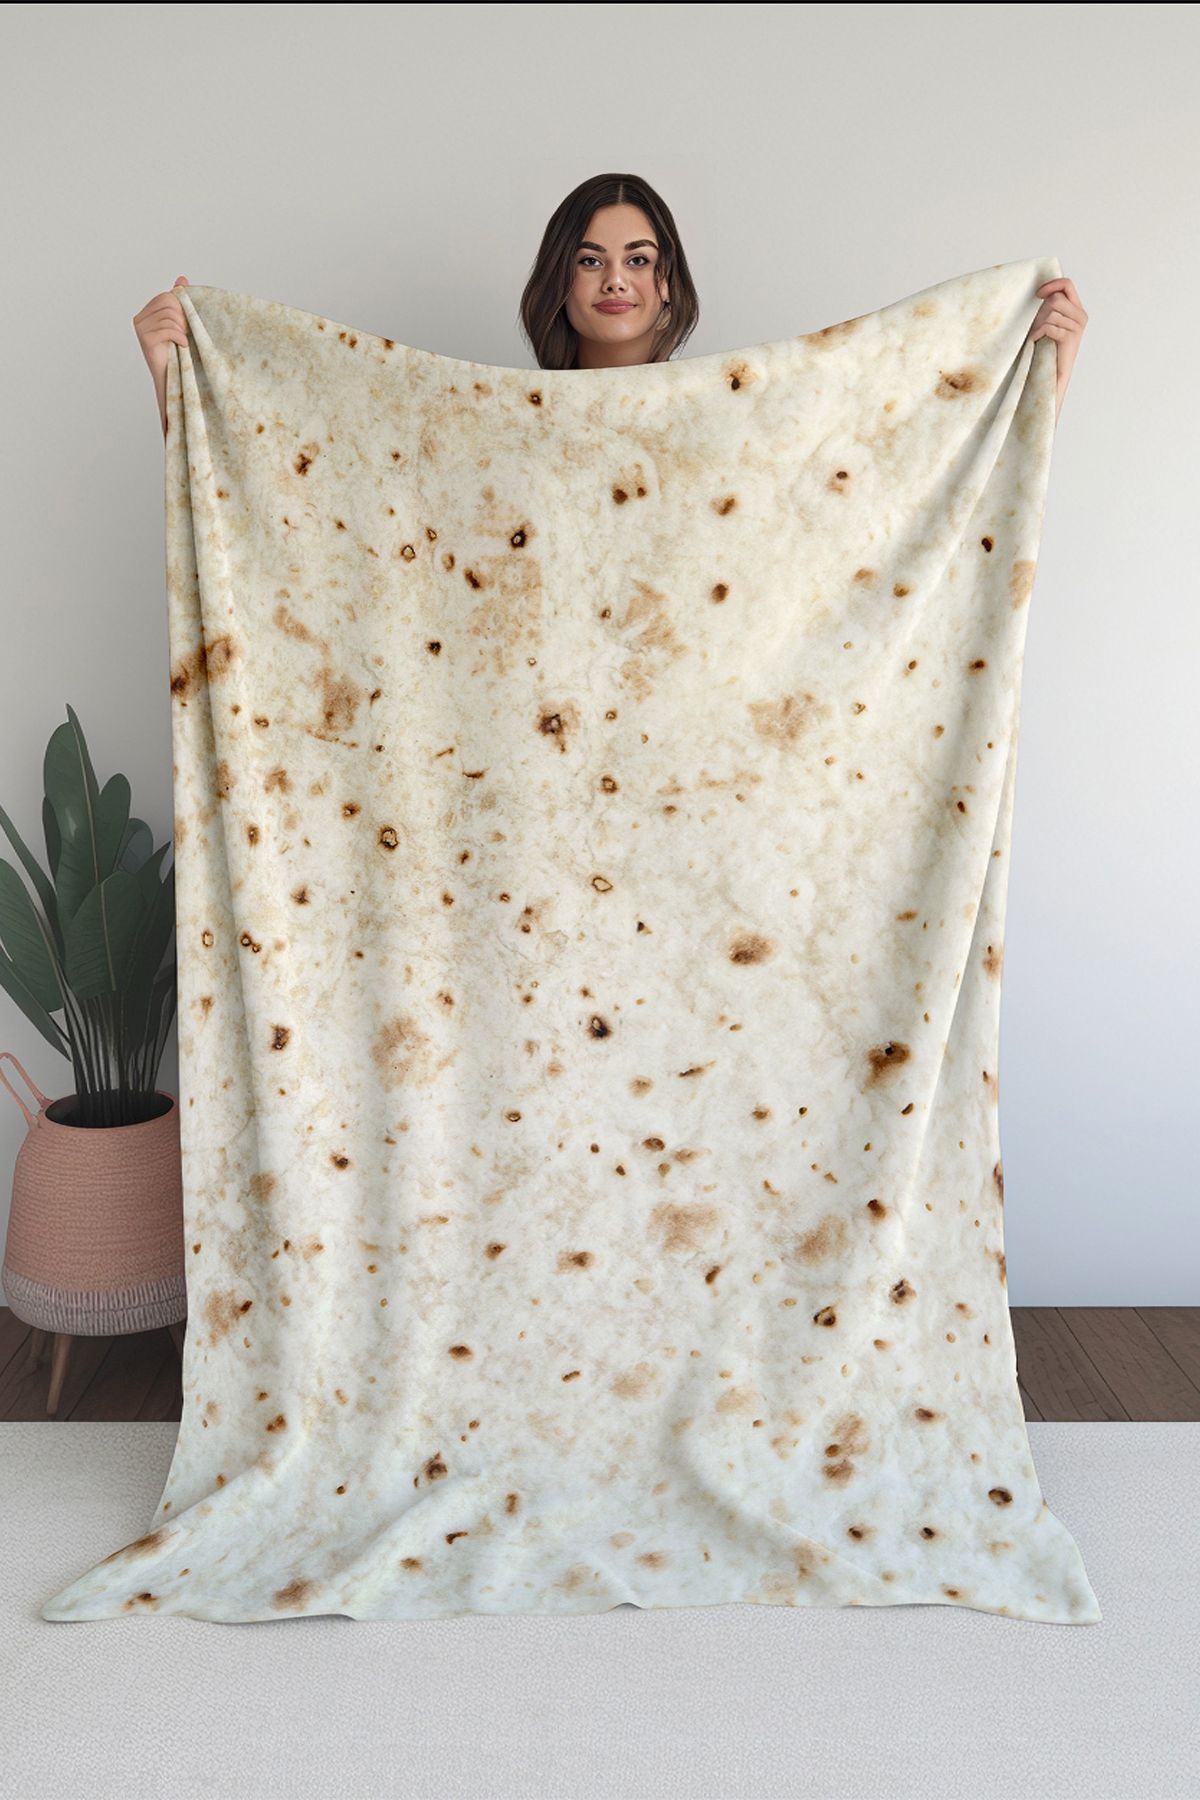 Homefesto Baskılı Polar Krem Battaniye Tv Battaniyesi Makinede Yıkanabilir Battaniye Blanket016